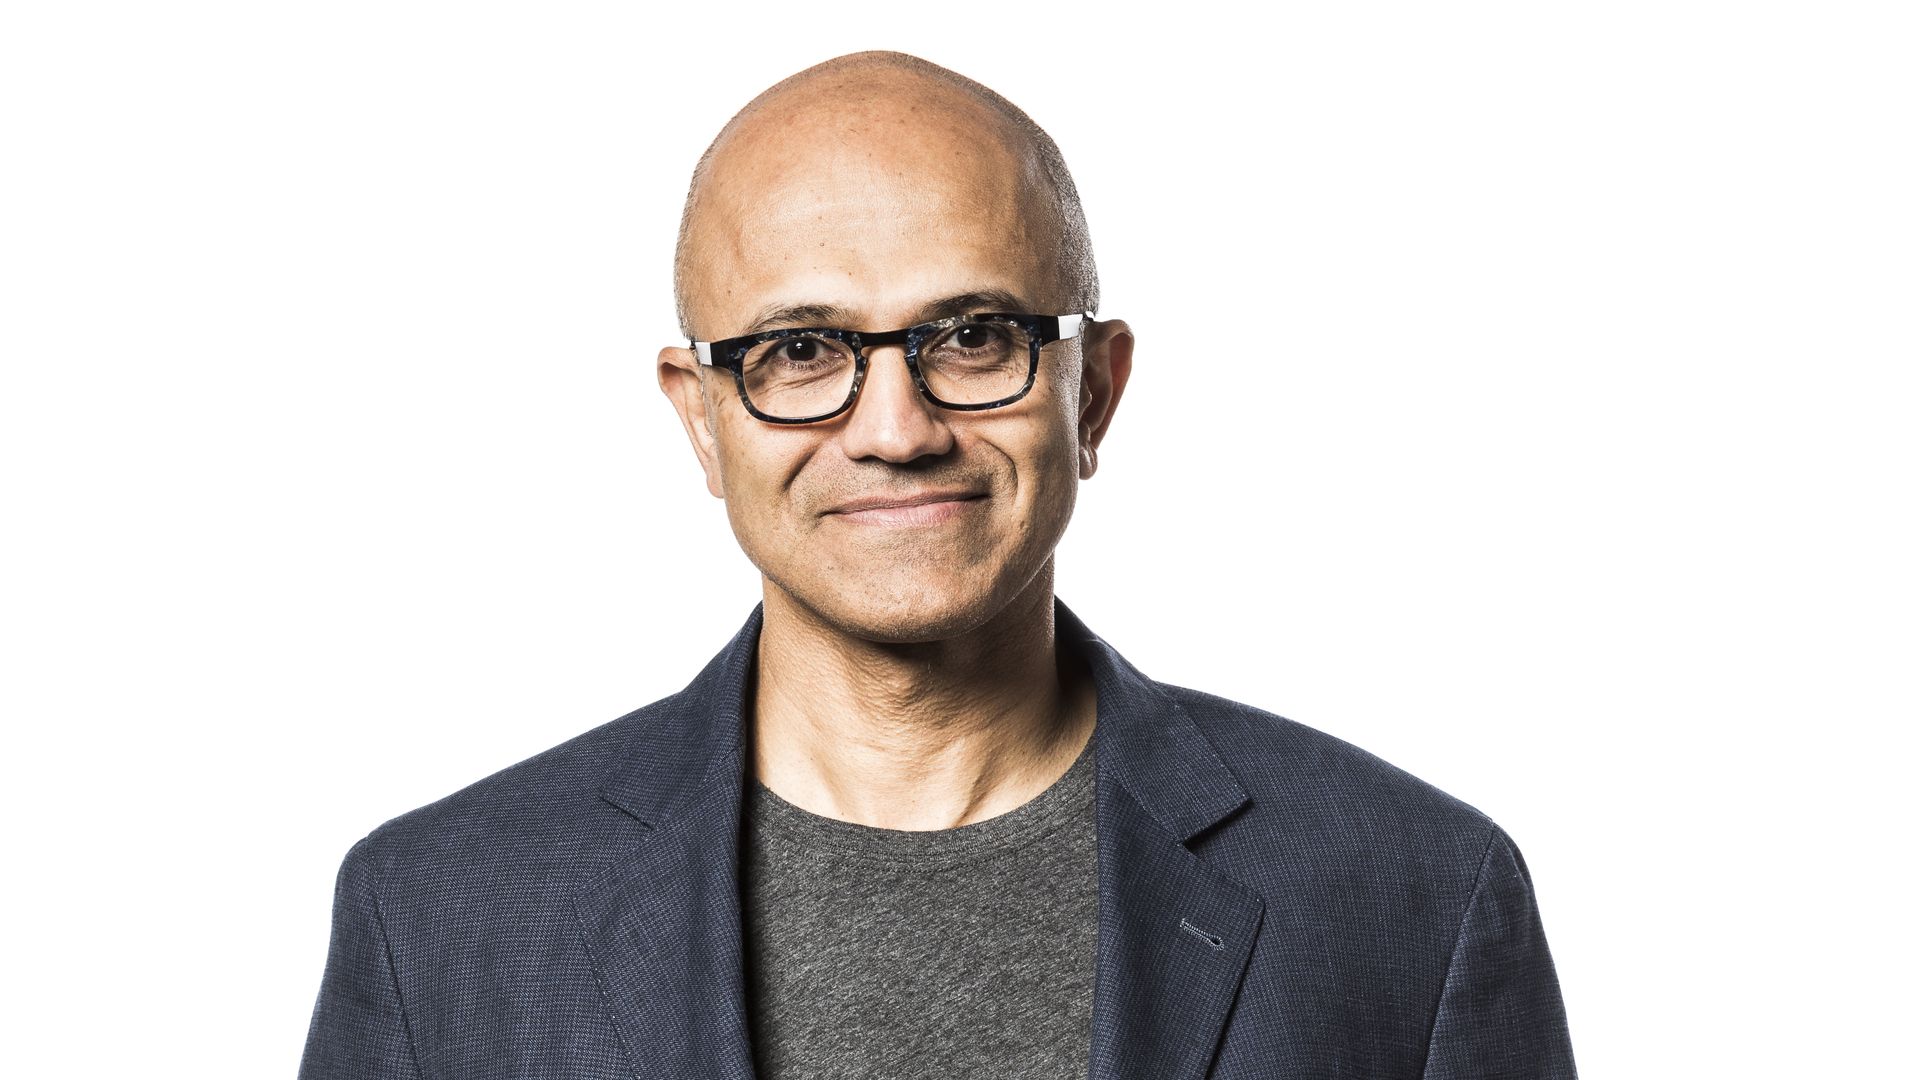 Microsoft CEO Satya Nadella in a corporate portrait